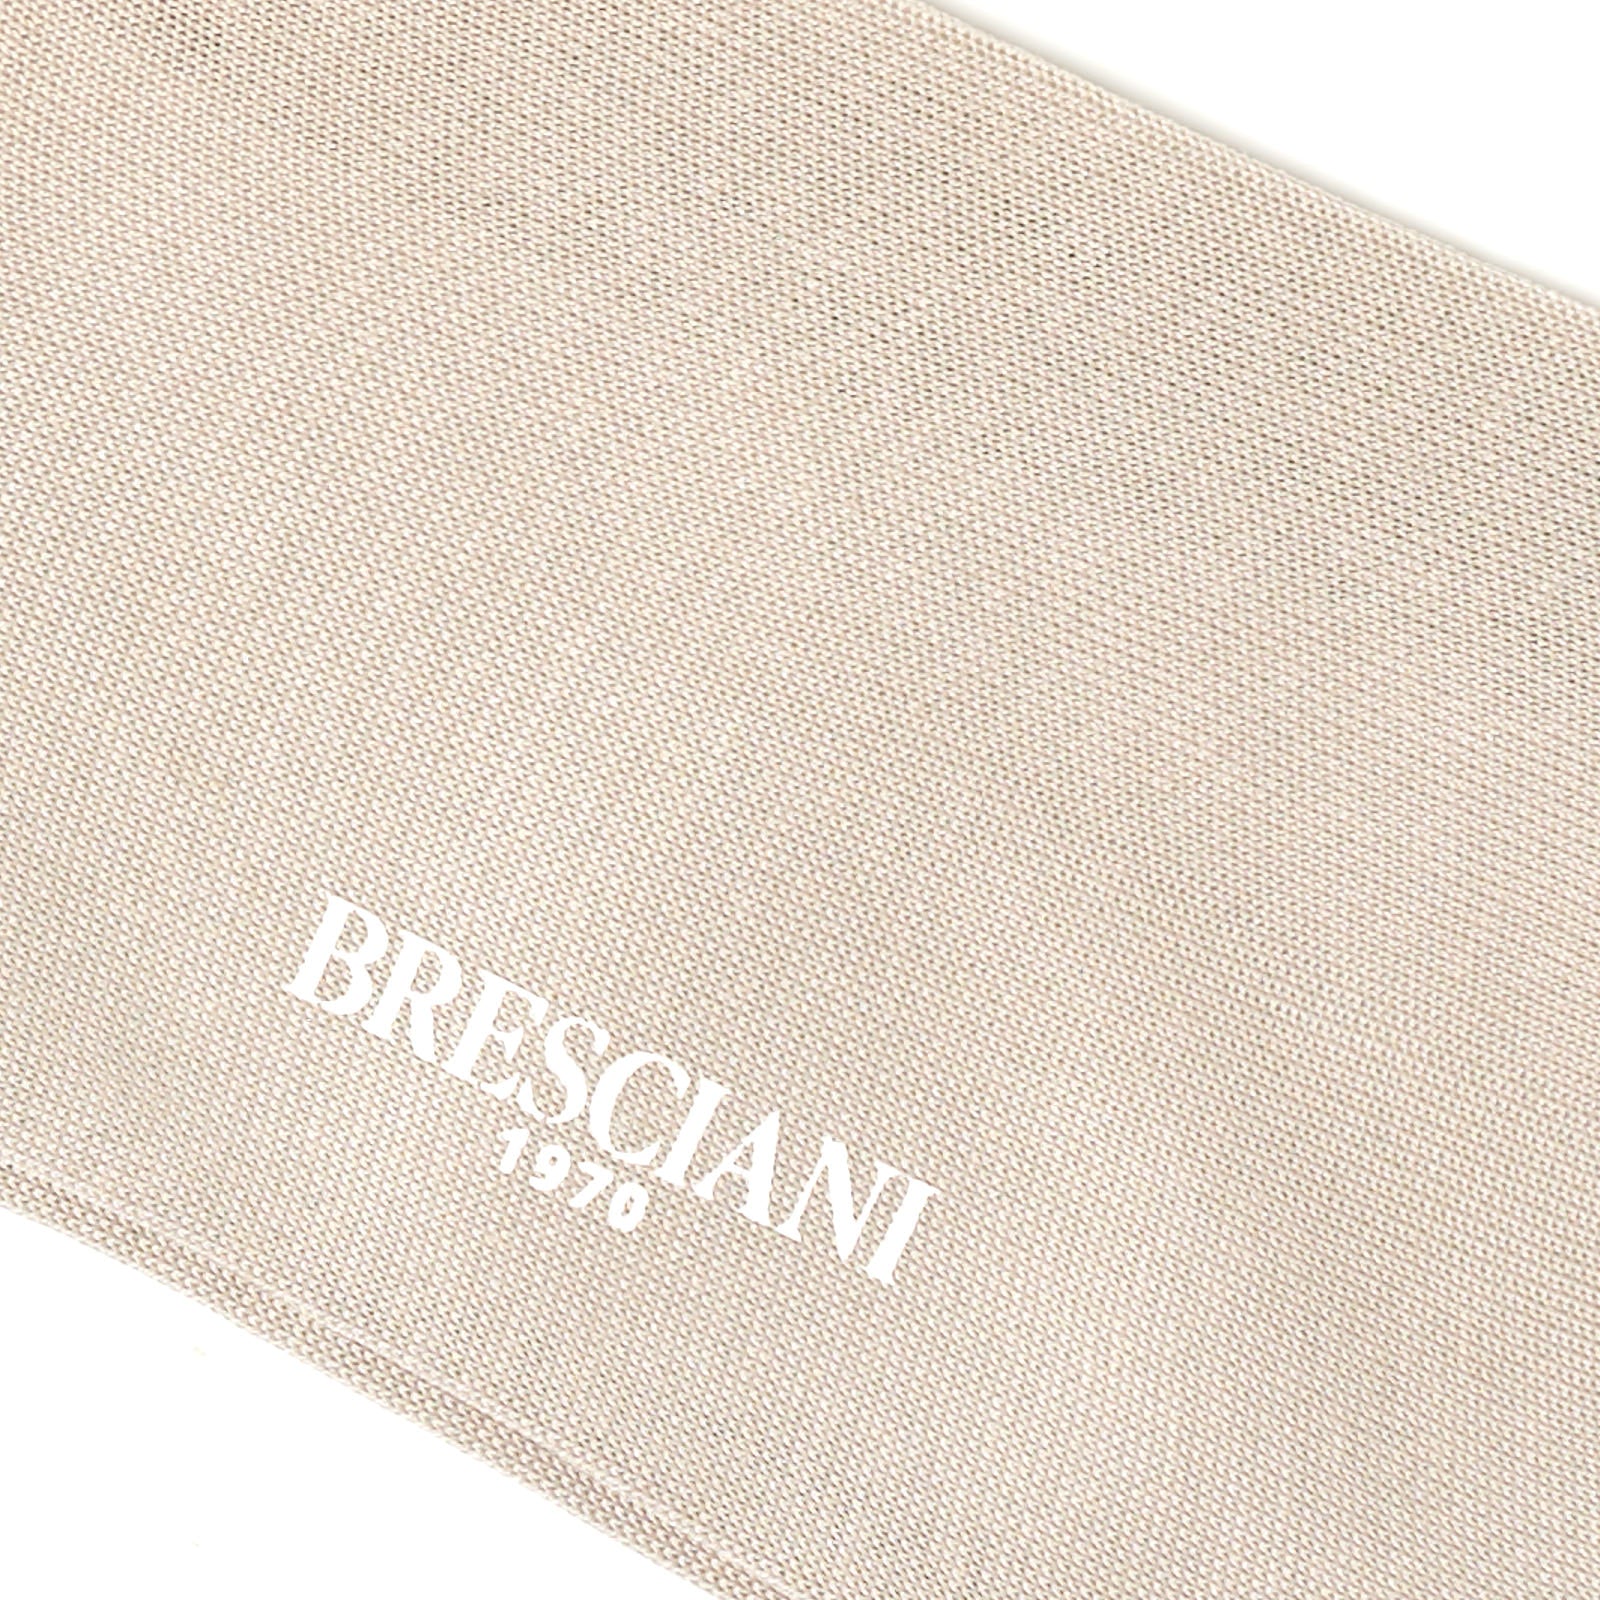 BRESCIANI Cotton Icon Art Mid Calf Length Socks US M-L BRESCIANI